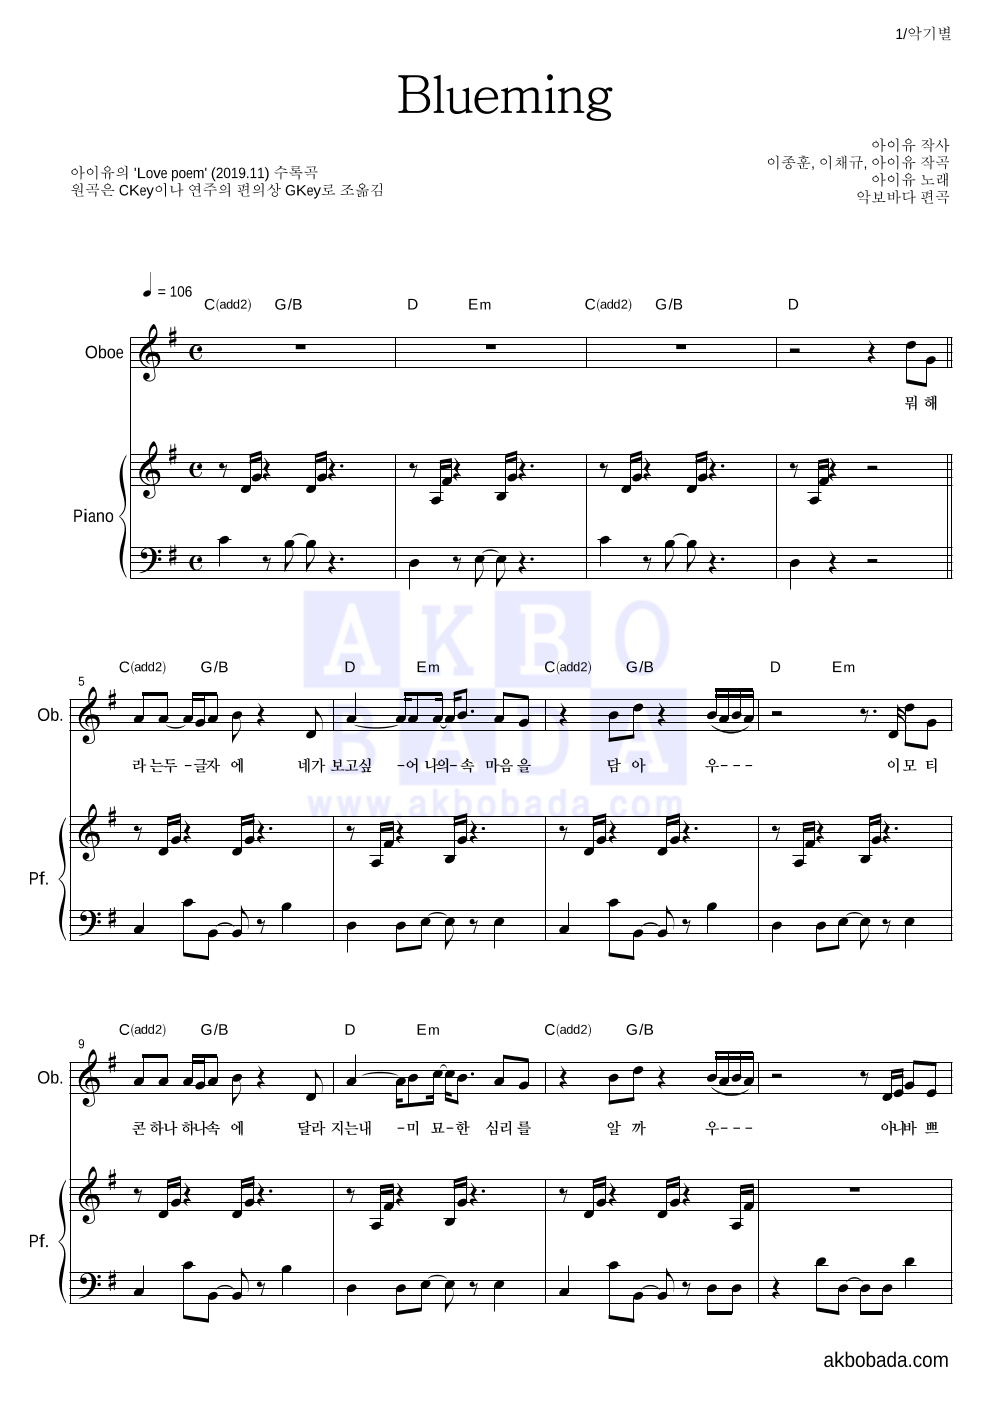 아이유 - Blueming 오보에&피아노 악보 